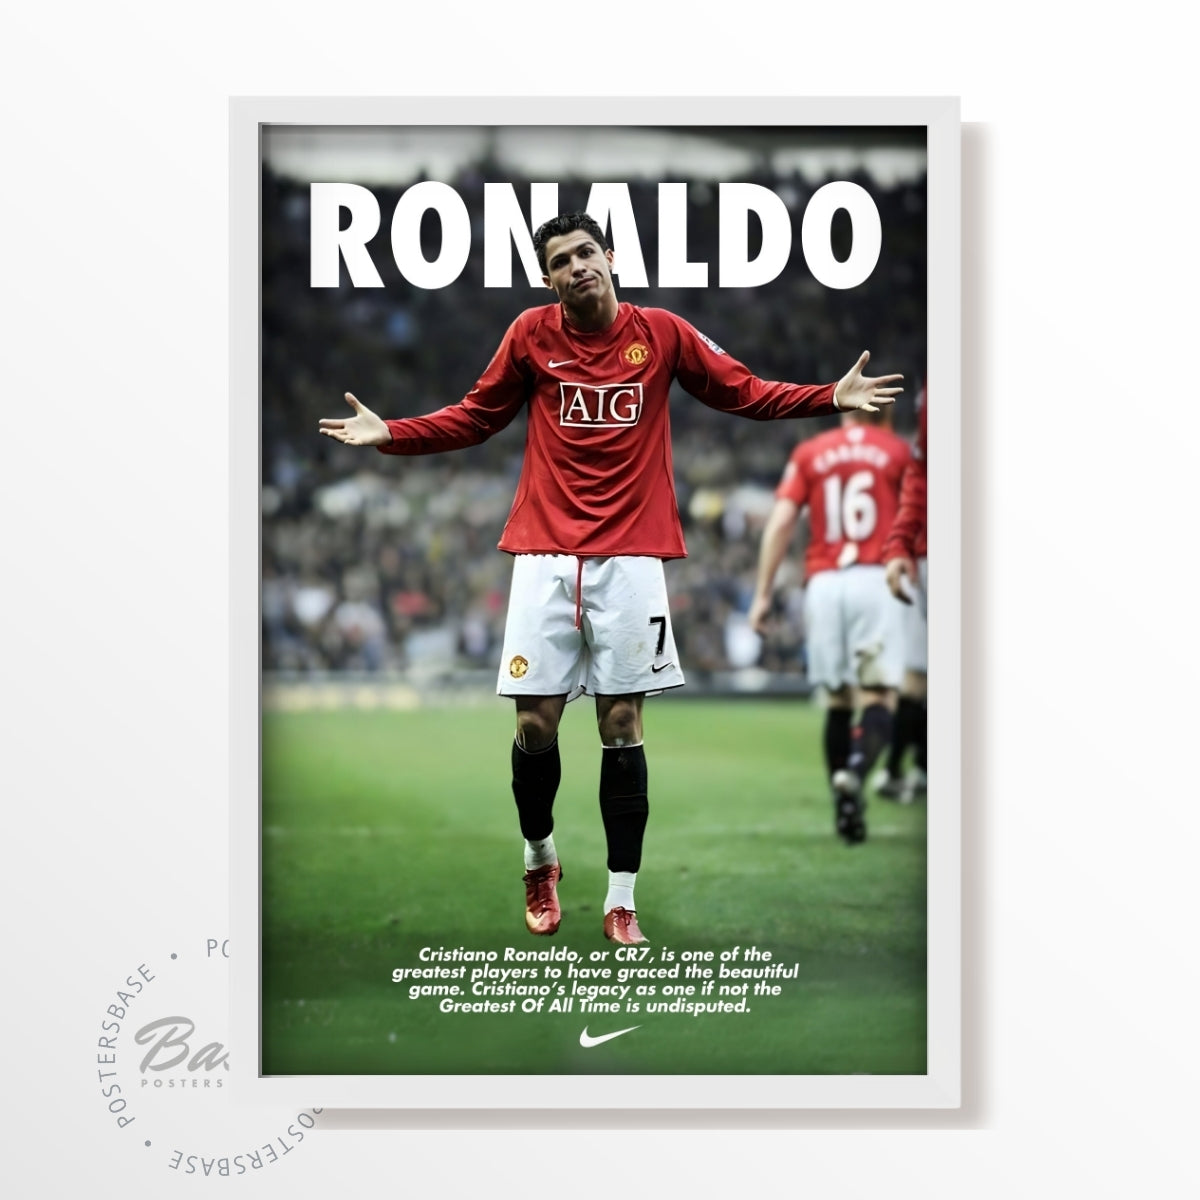 Cristiano Ronaldo or CR7